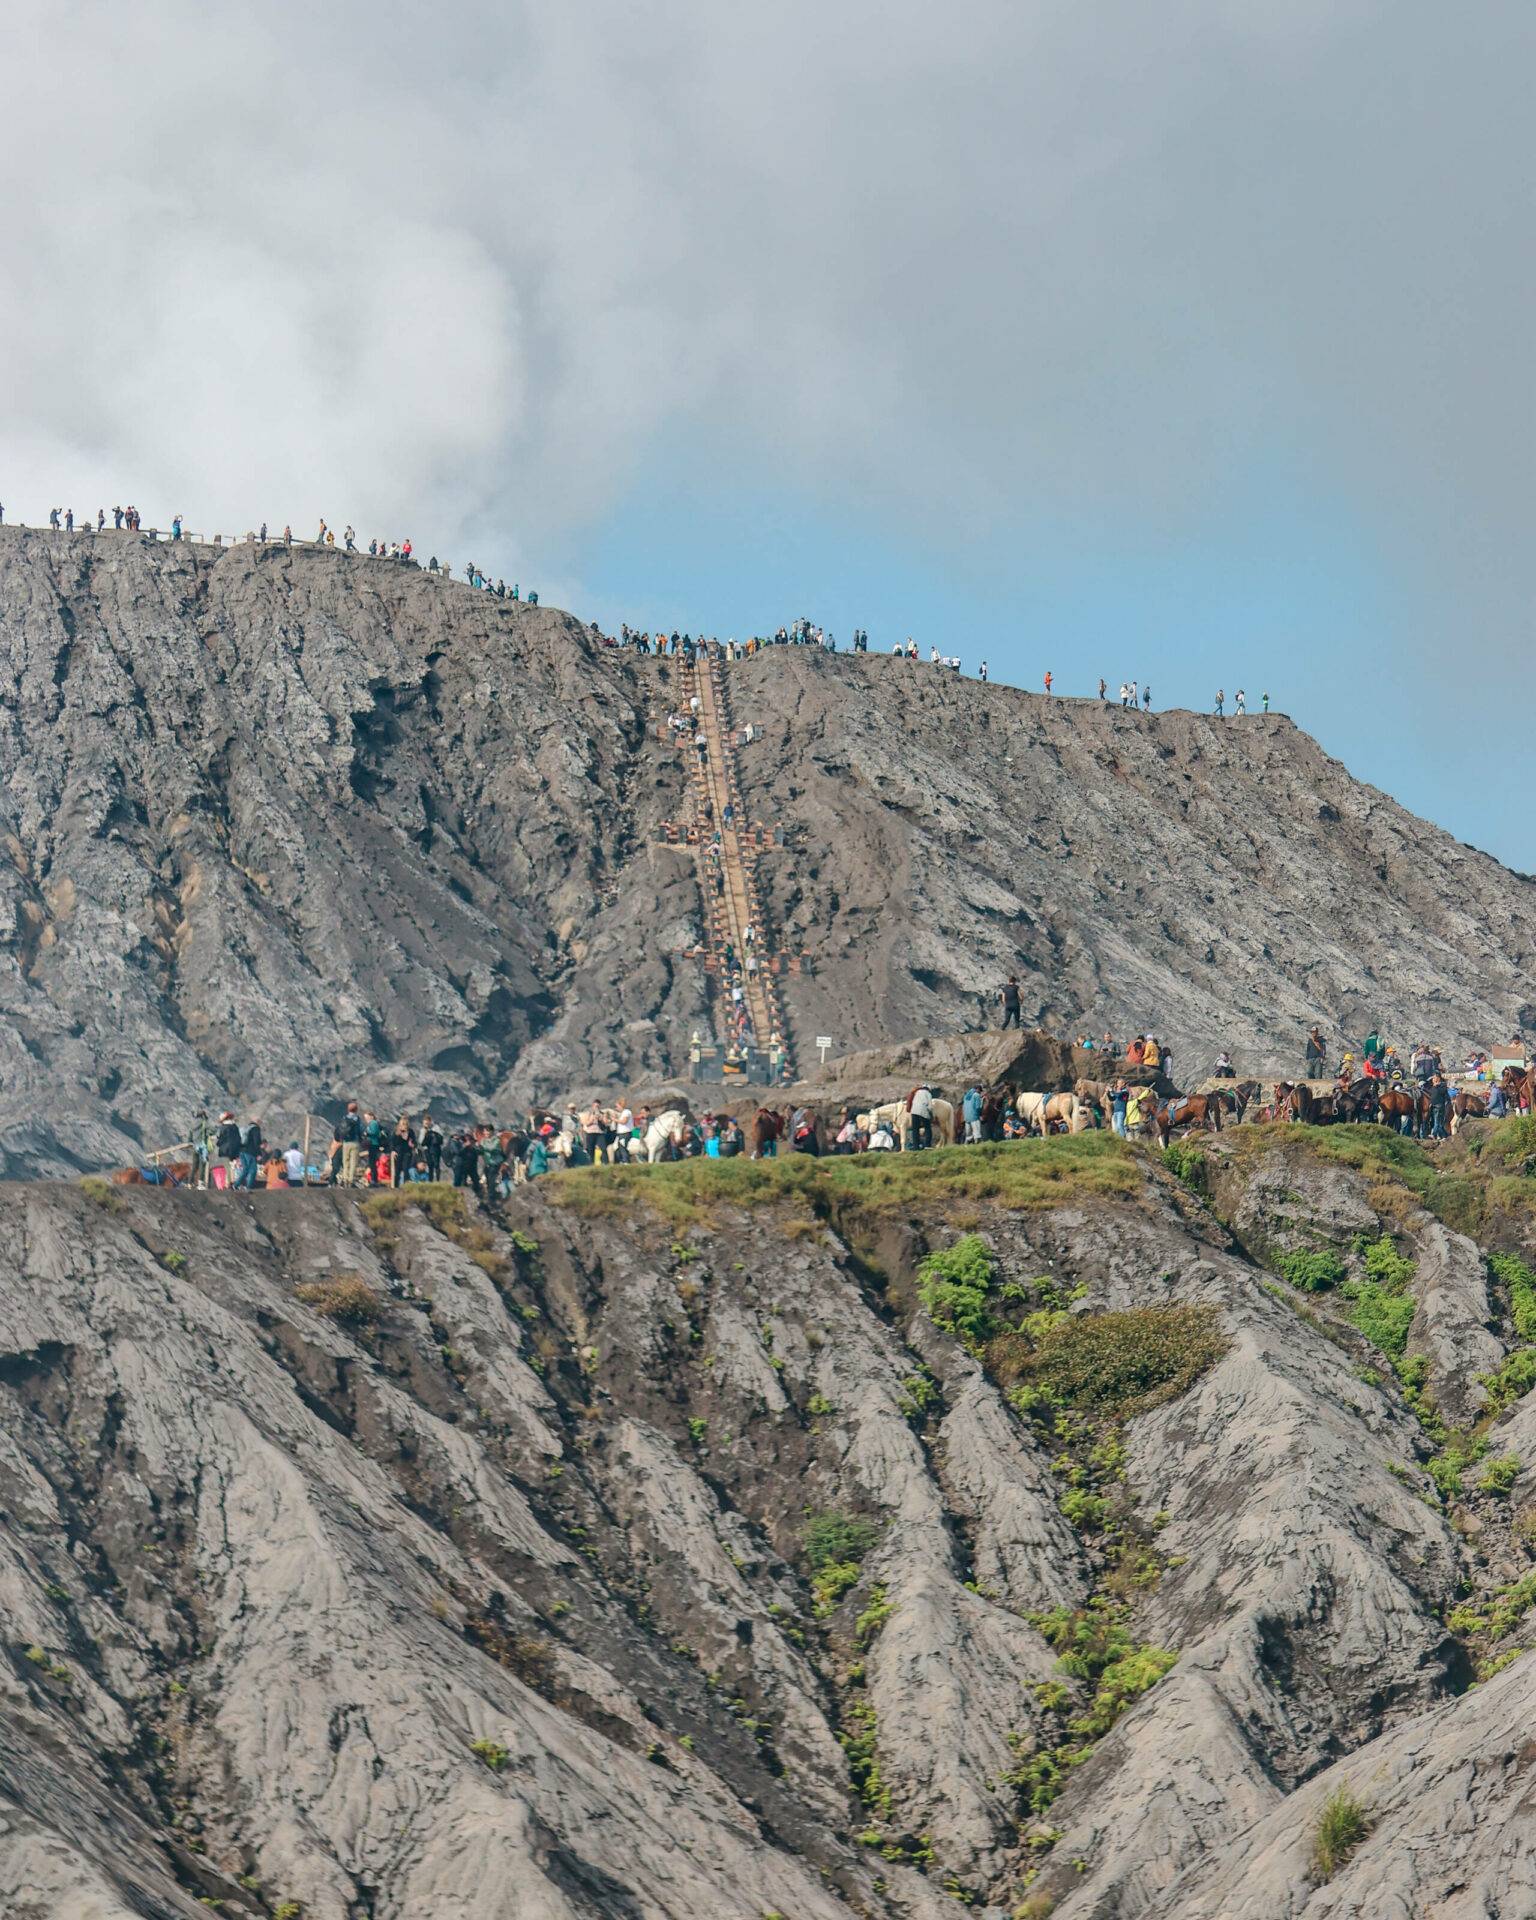 Auf dem Weg zum Kraterrand war einiges los. Vor allem bei chinesischen Touristen ist der Bromo Vulkan sehr beliebt.